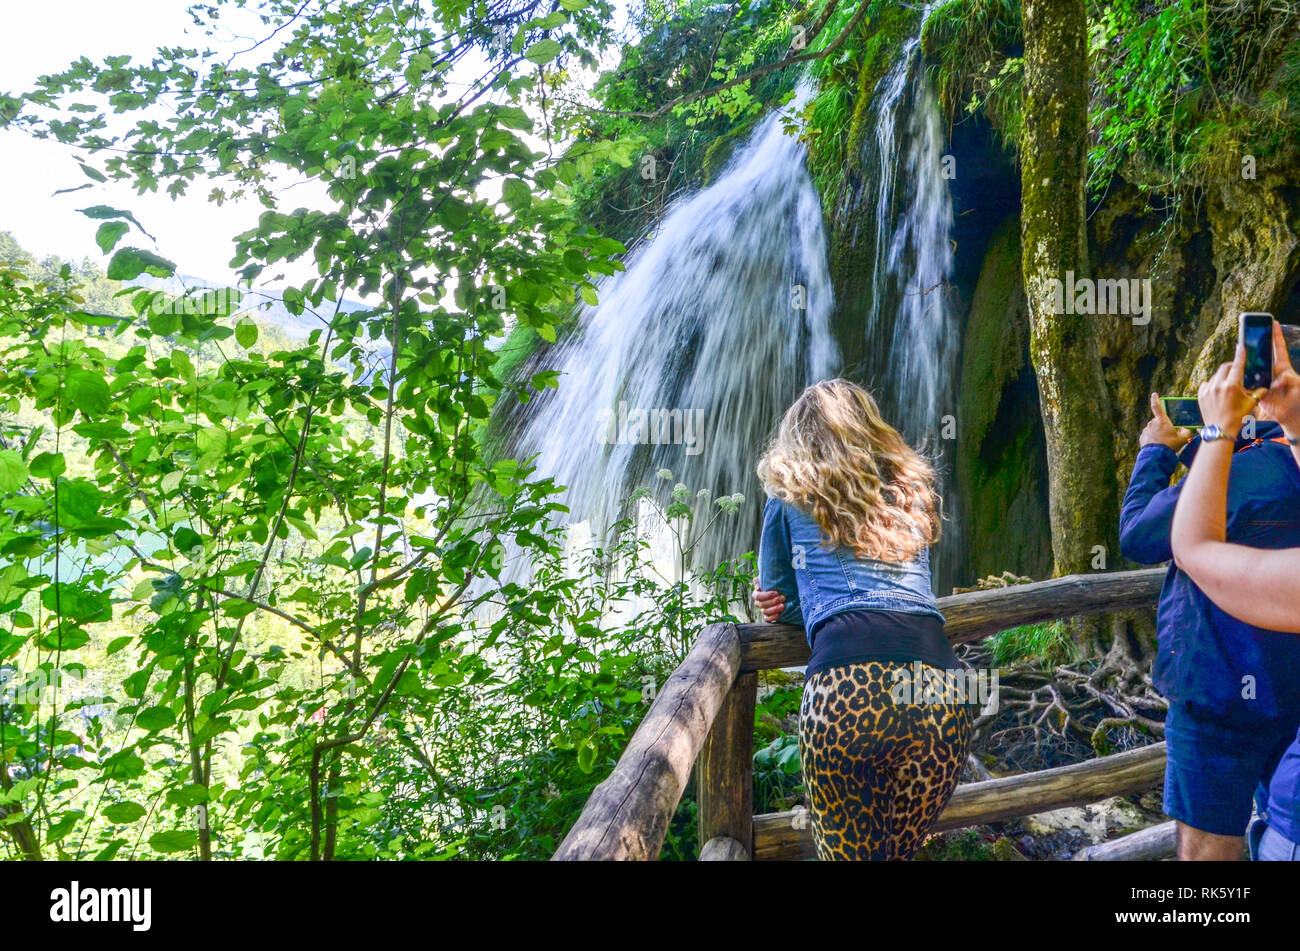 Visitantes tomando fotos del Parque Nacional de los Lagos de Plitvice (Centro del Patrimonio Mundial de la UNESCO) en Croacia: Cascadas, vida silvestre, puentes, turistas ... Foto de stock